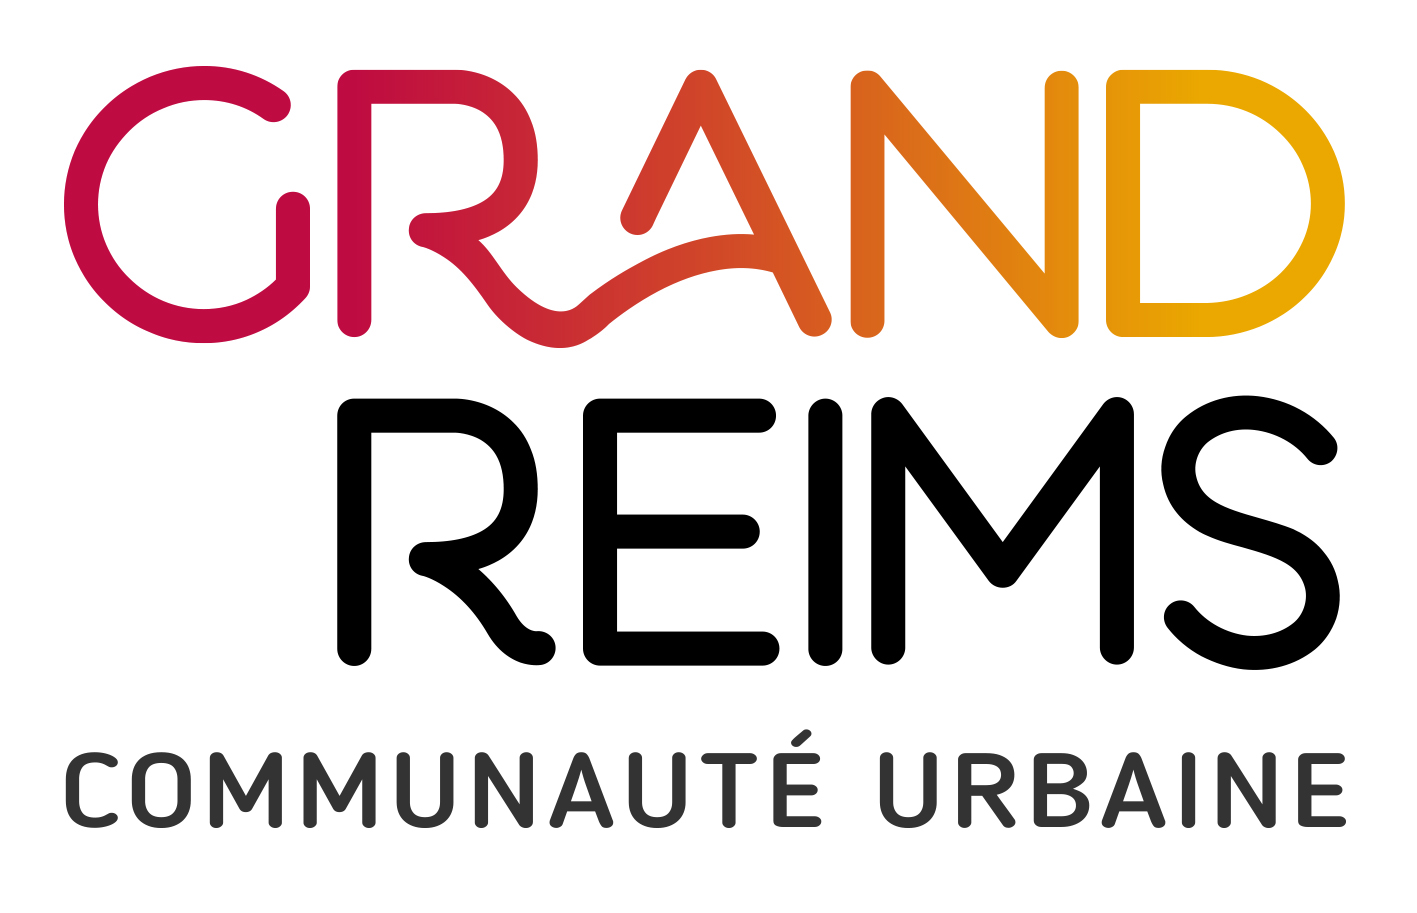 Logo Grand Reims